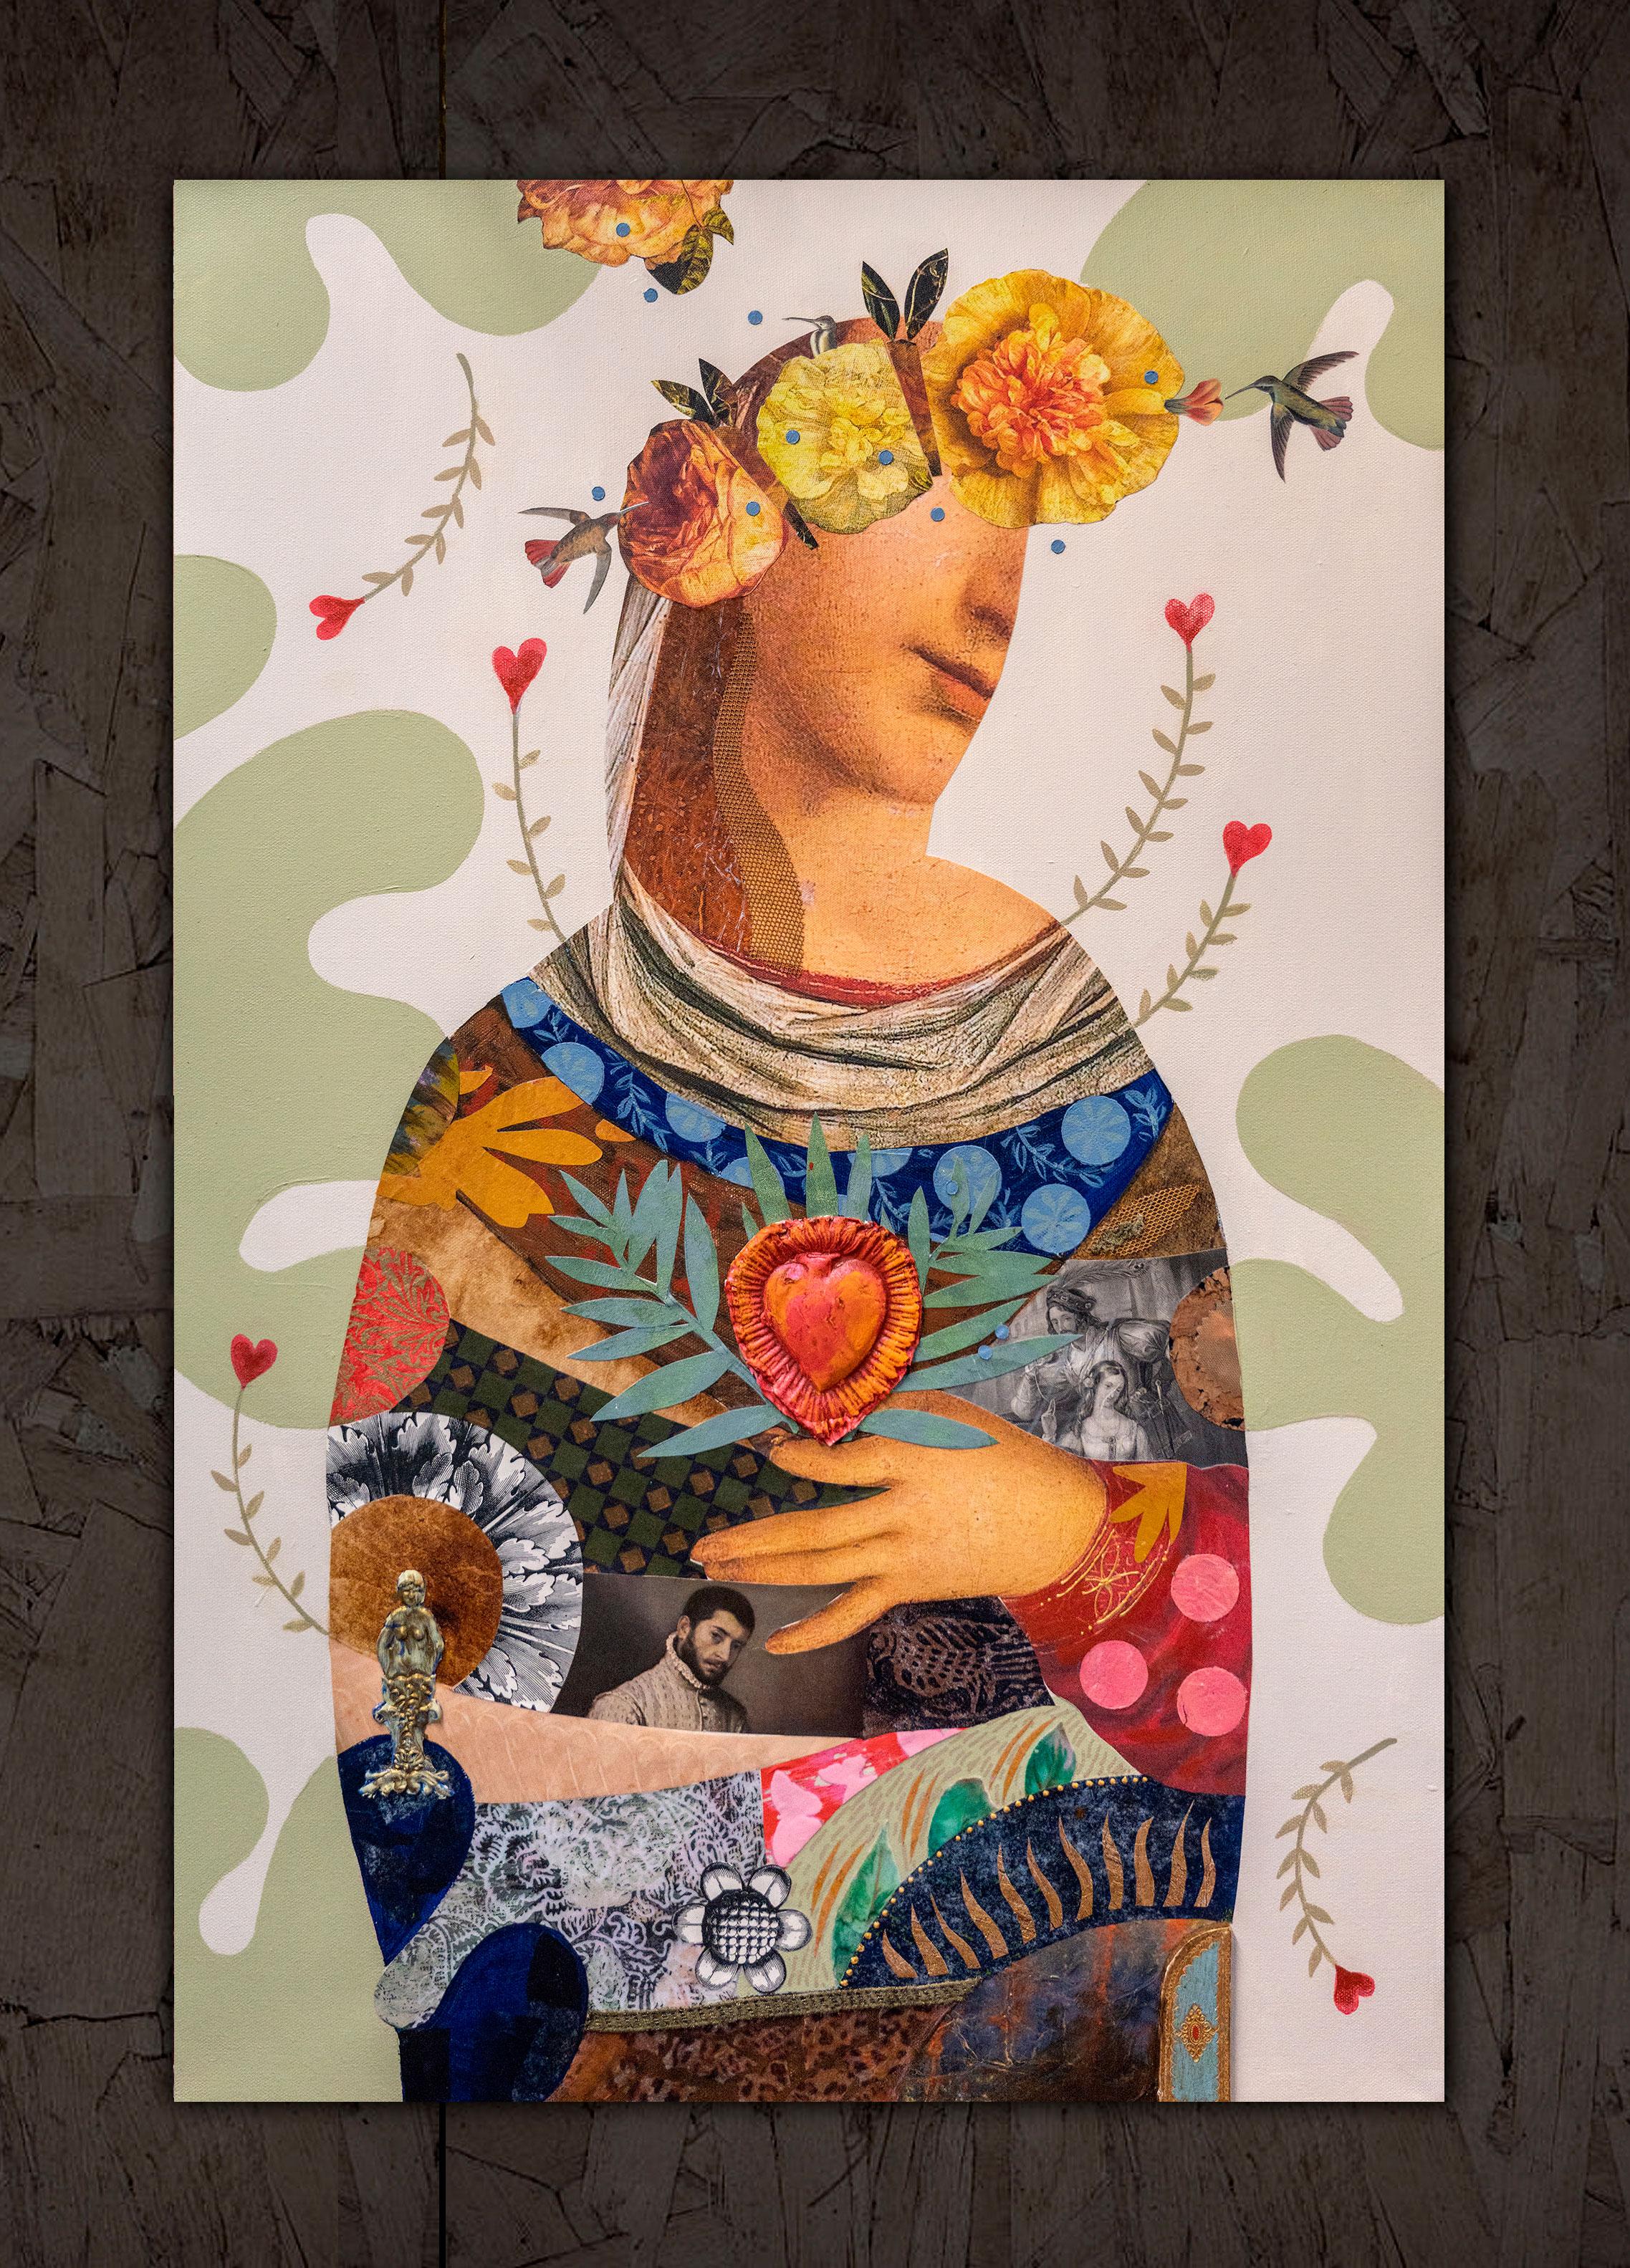 <p>Kommentare des KünstlersDieses Mixed-Media-Kunstwerk zeigt das Porträt einer Dame, die zart ein Herz an ihre Brust drückt.<br> Ihr Kleid ist ein Wandteppich aus Objekten und Mustern, der sich deutlich von dem gedämpften Hintergrund abhebt. Das